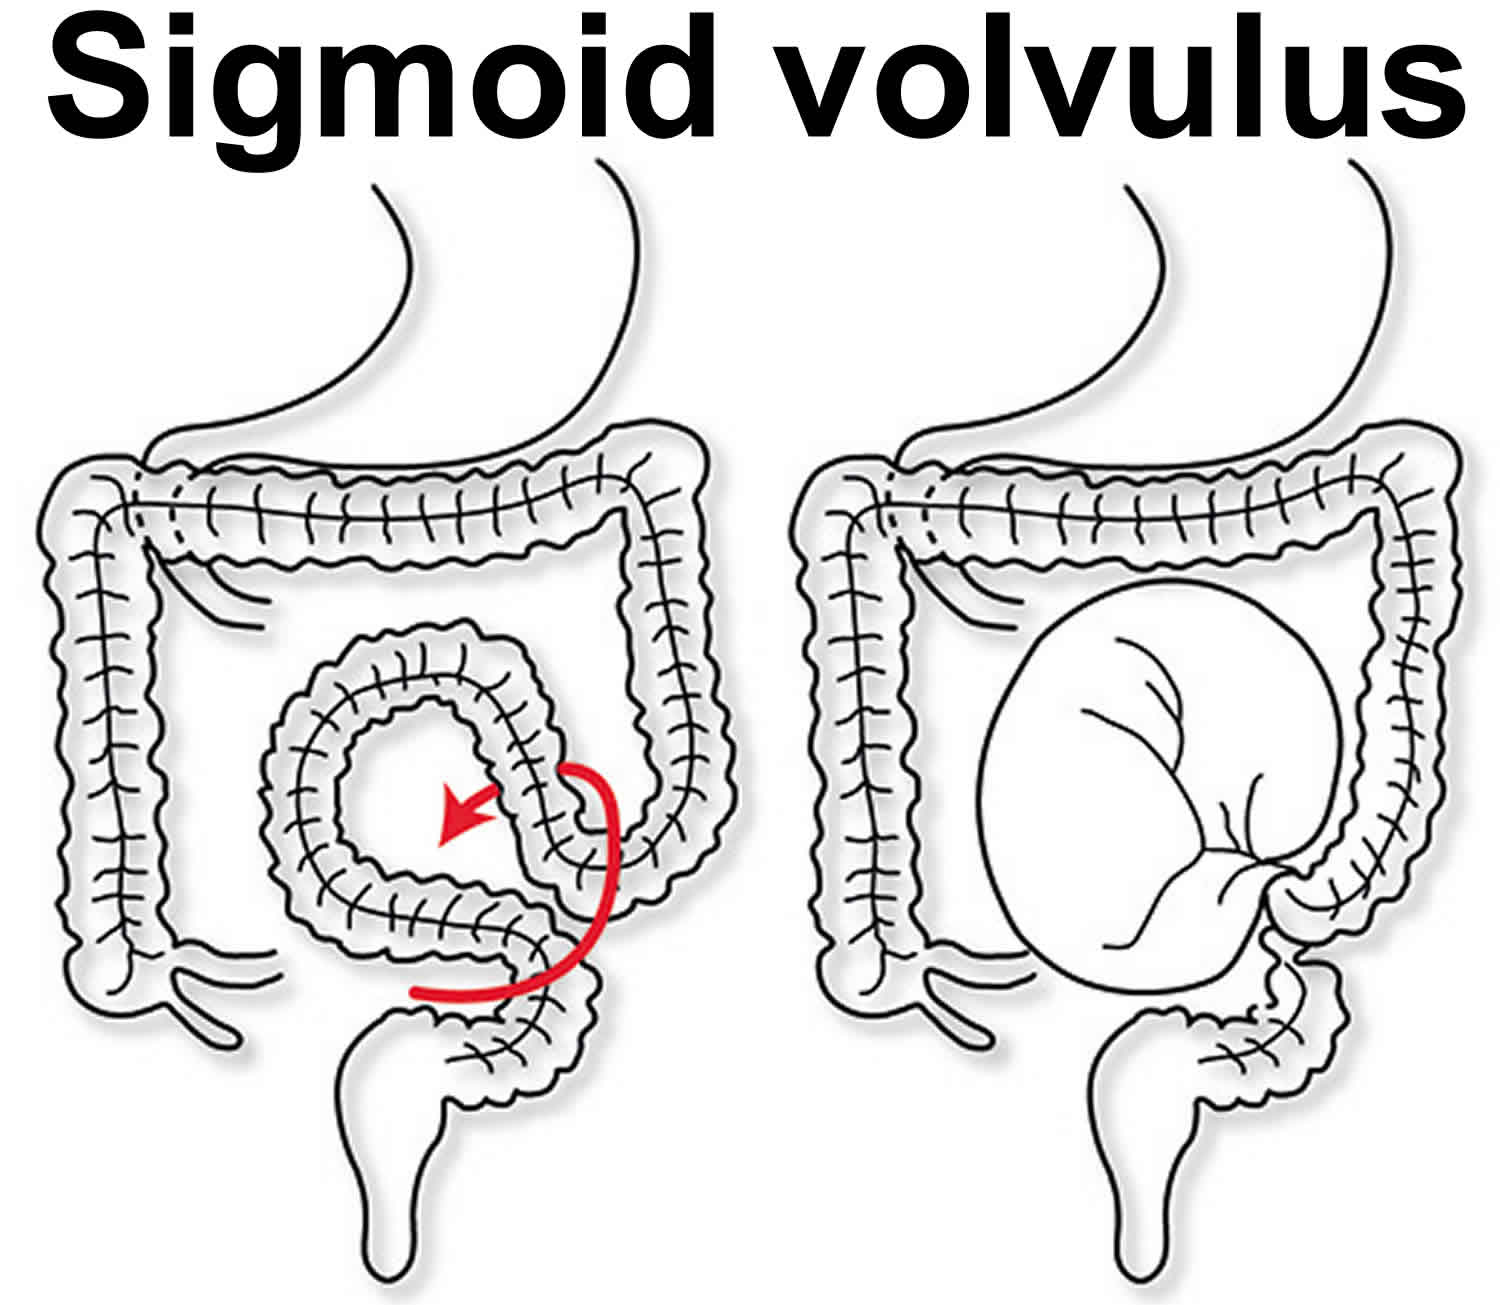 sigmoid-volvulus (1).jpg